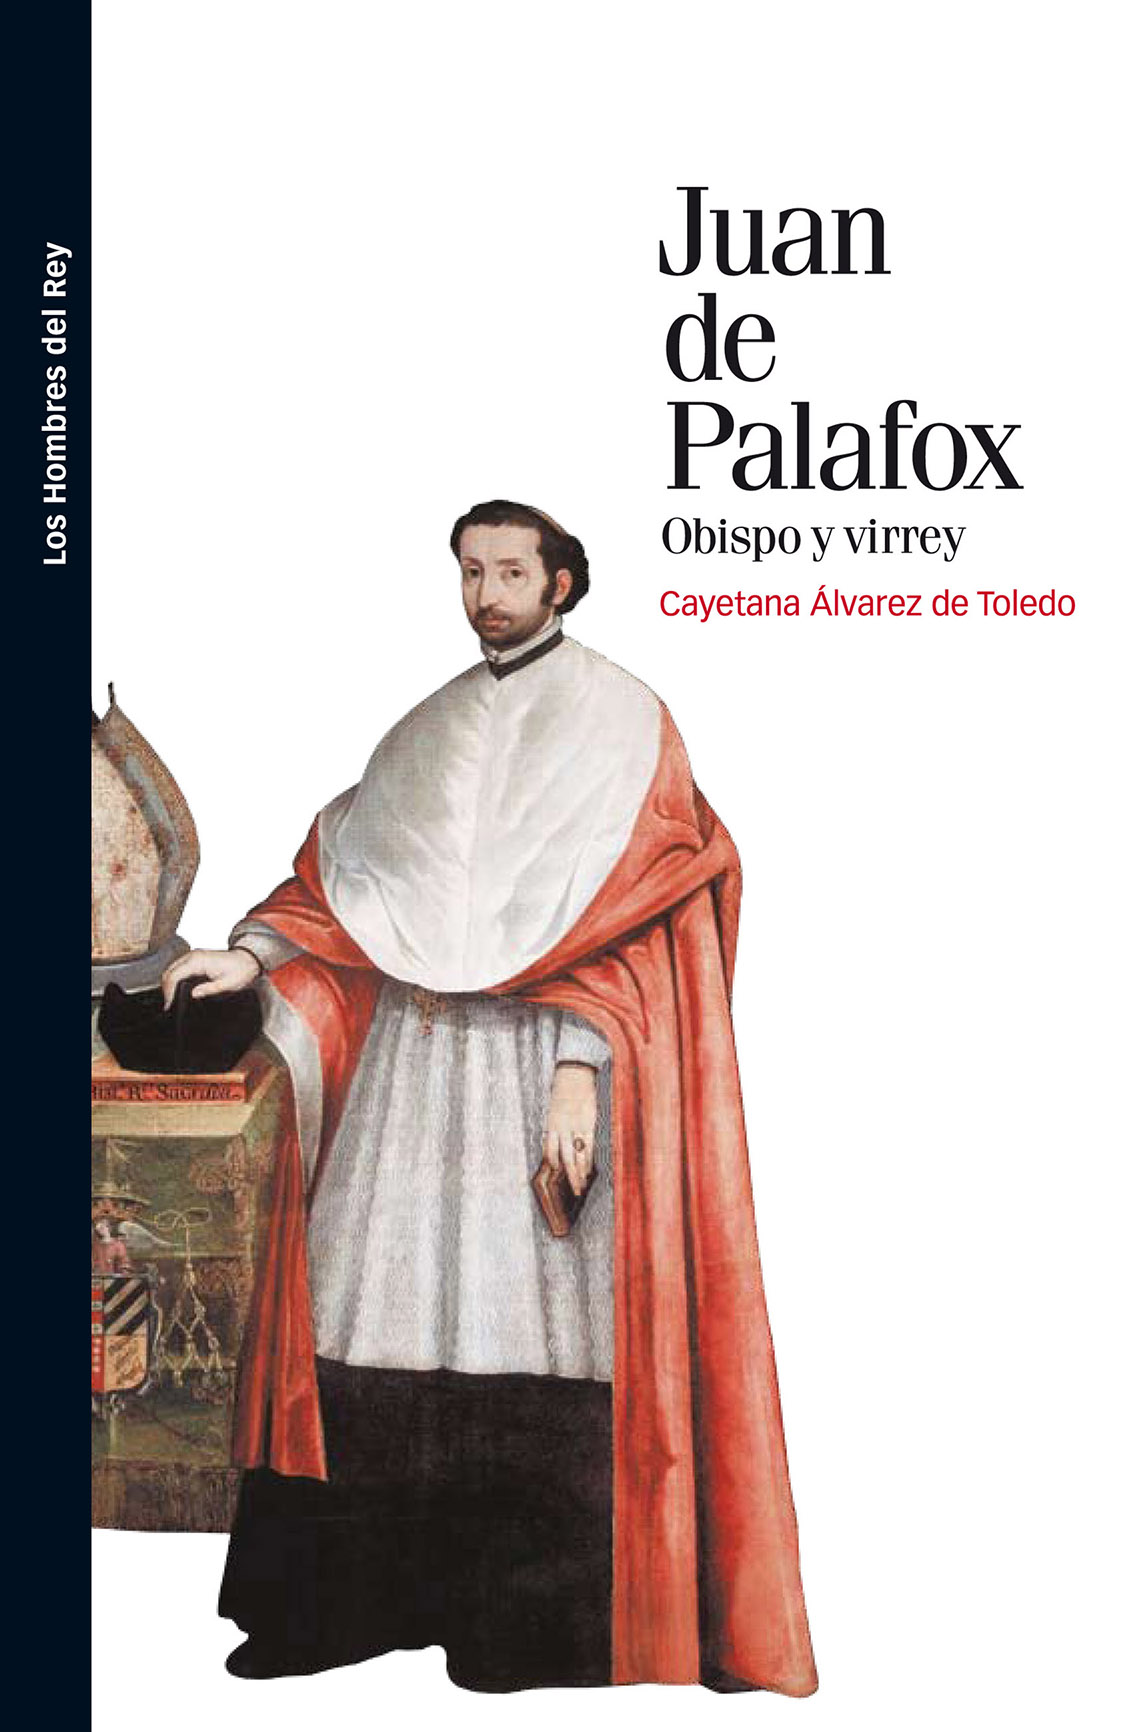 Portada del libro 'Juan de Palafox, obispo y virrey', de Cayetana Álvarez de Toledo.